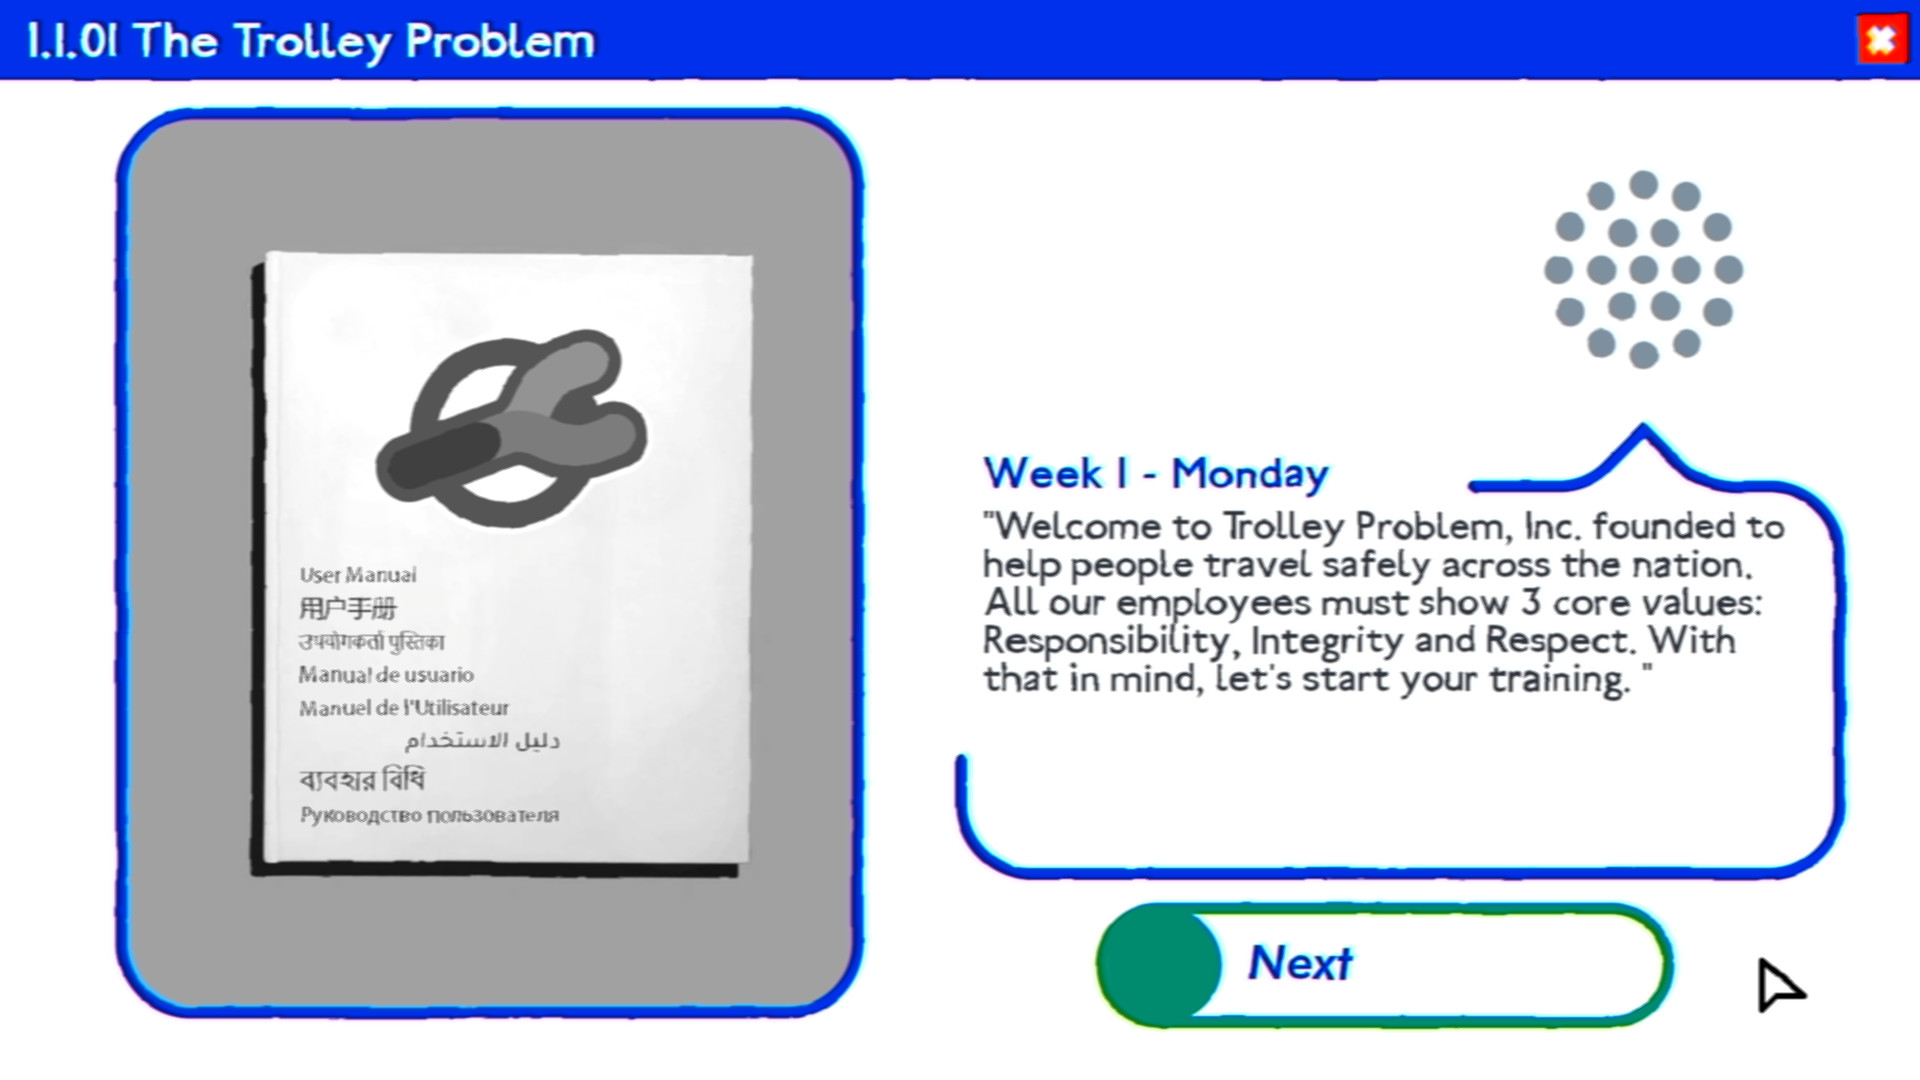 Trolley Problem, Inc. on Steam